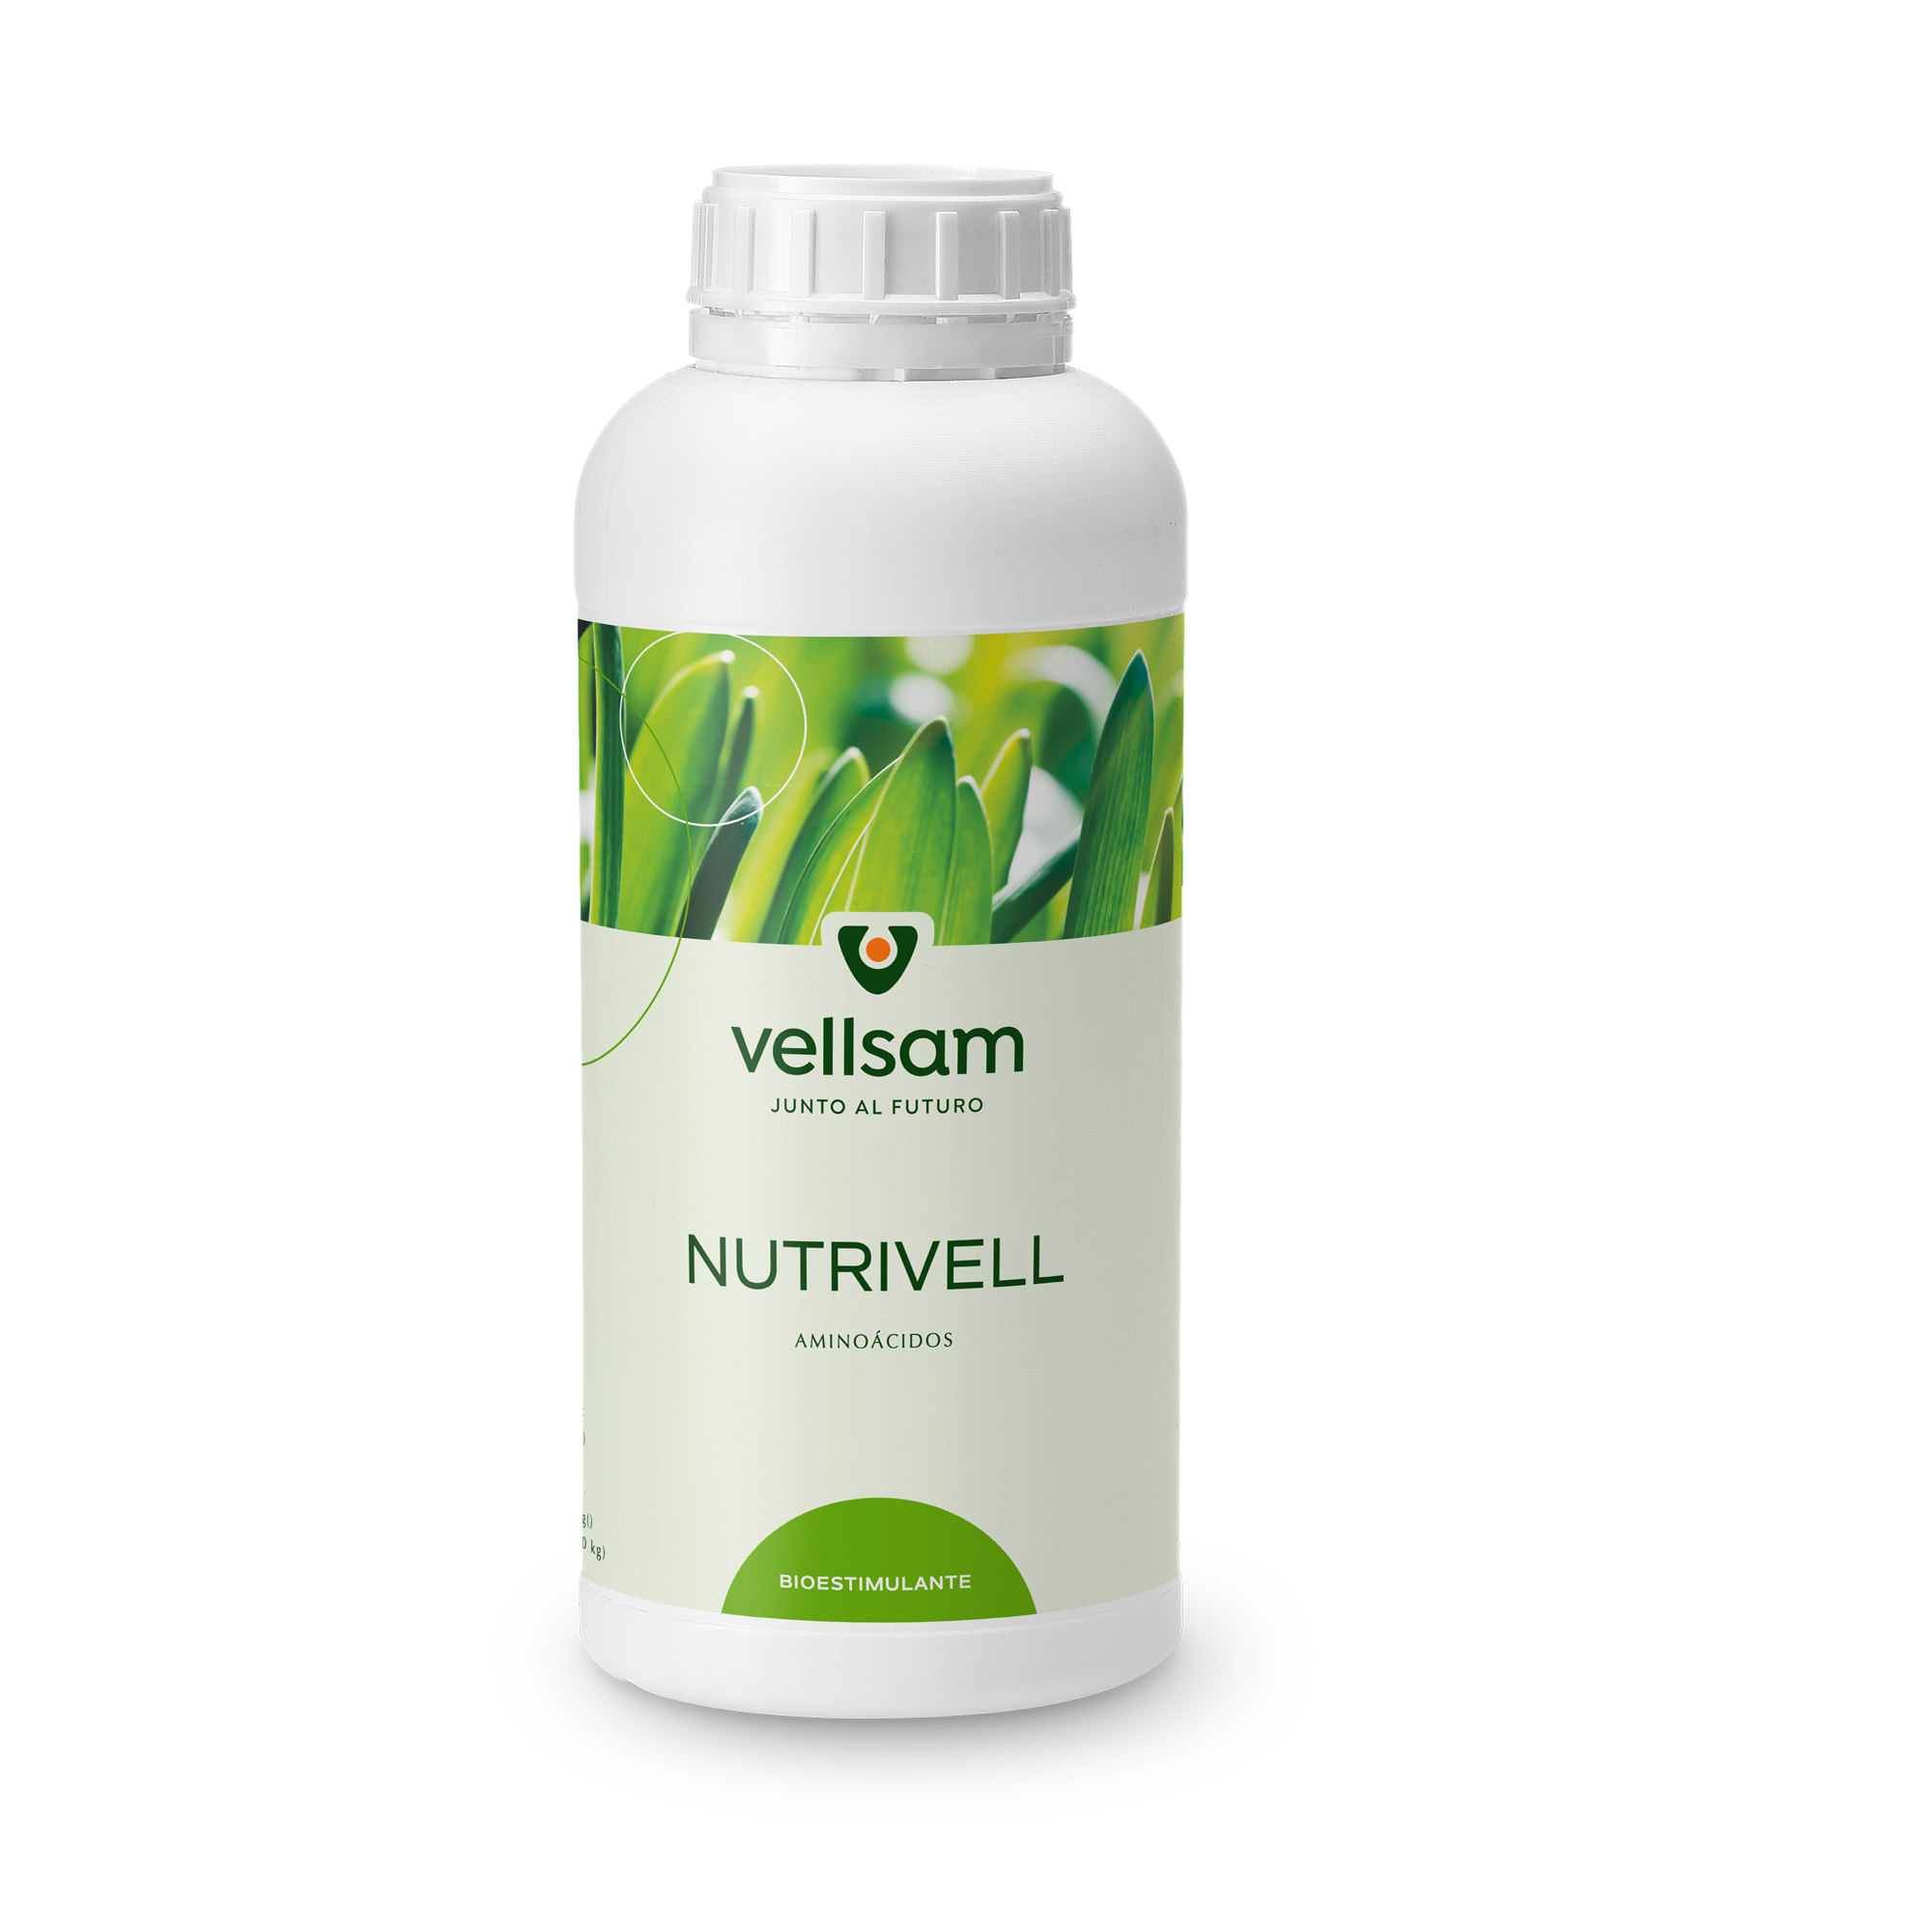 Nutrivell - Неизоставни производ у интензивној производњи. То је течни биостимулатор чија се главна активна материја састоји из слободних аминокиселина (Л-цистеин и Л-метионин) које се понашају као активатори физиолошких процеса у биљкама.